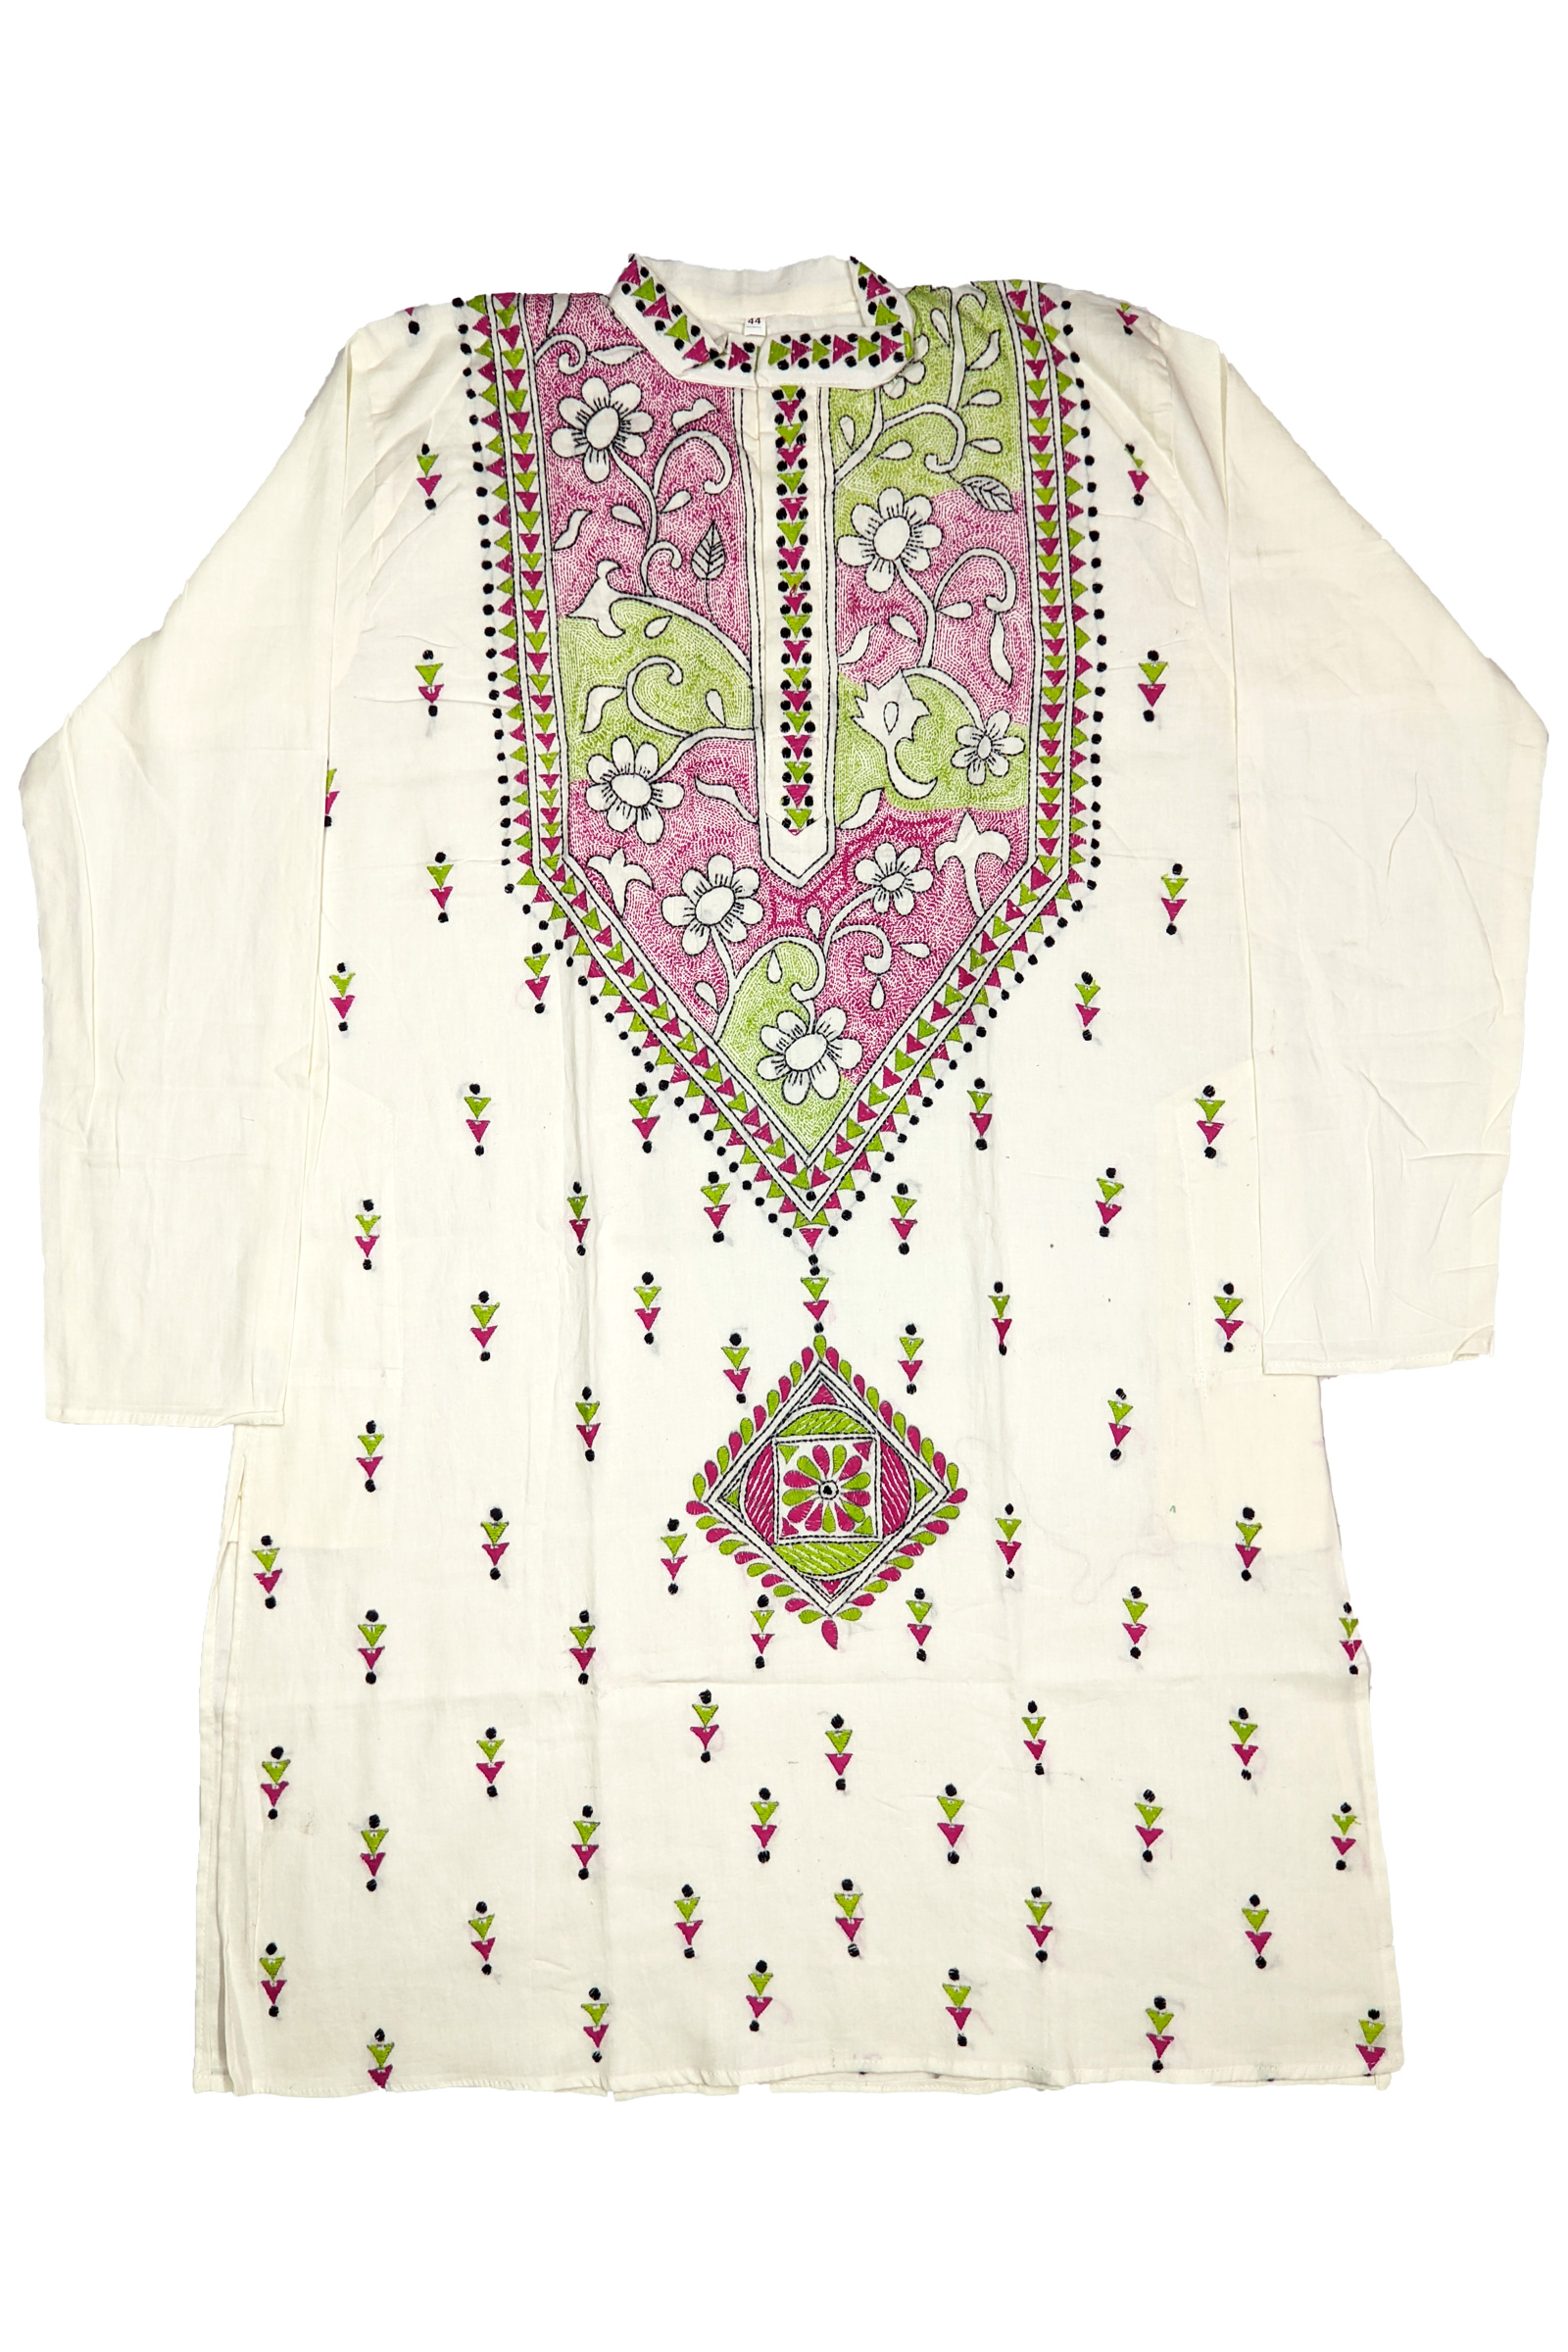 Buy Yellow Punjabi, Puja Special Punjabi, Hand Kantha Stitch Cotton  Punjabi, Kurtas for Men, Indian Bengali Traditional Dress, Size 40 slim  Online in India - Etsy